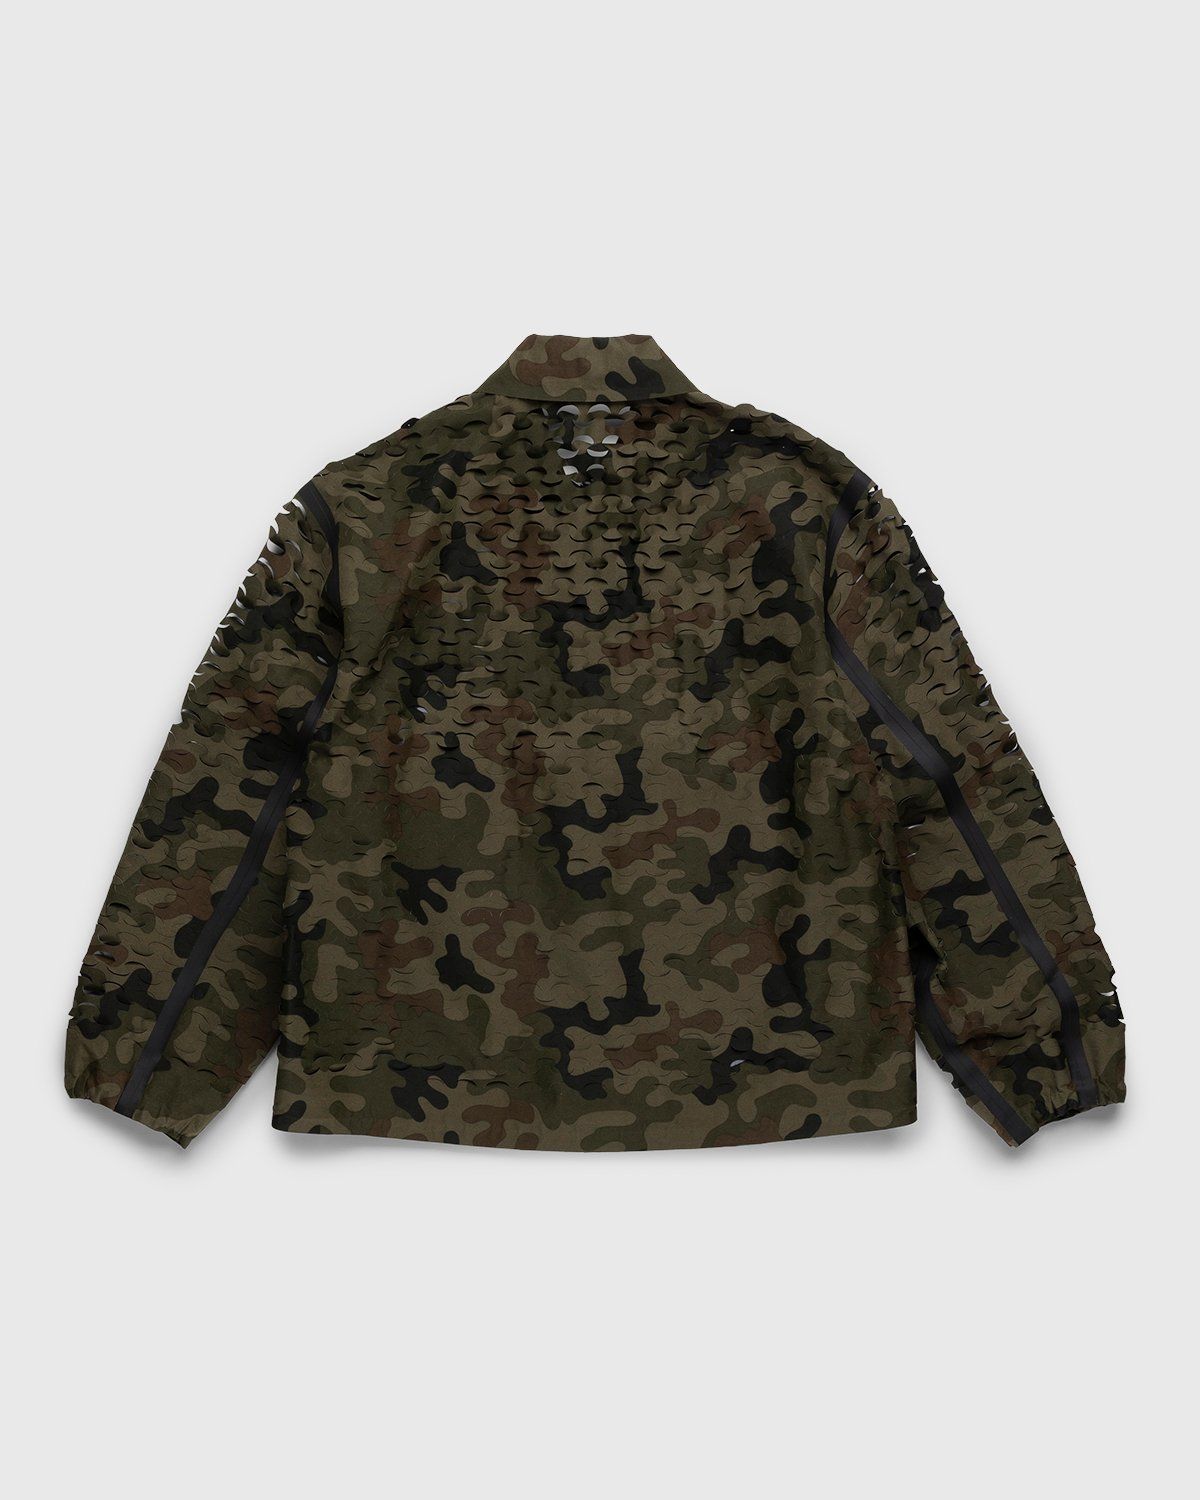 Dries van Noten – Voyde Laser Jacket Camouflage - Outerwear - Brown - Image 2